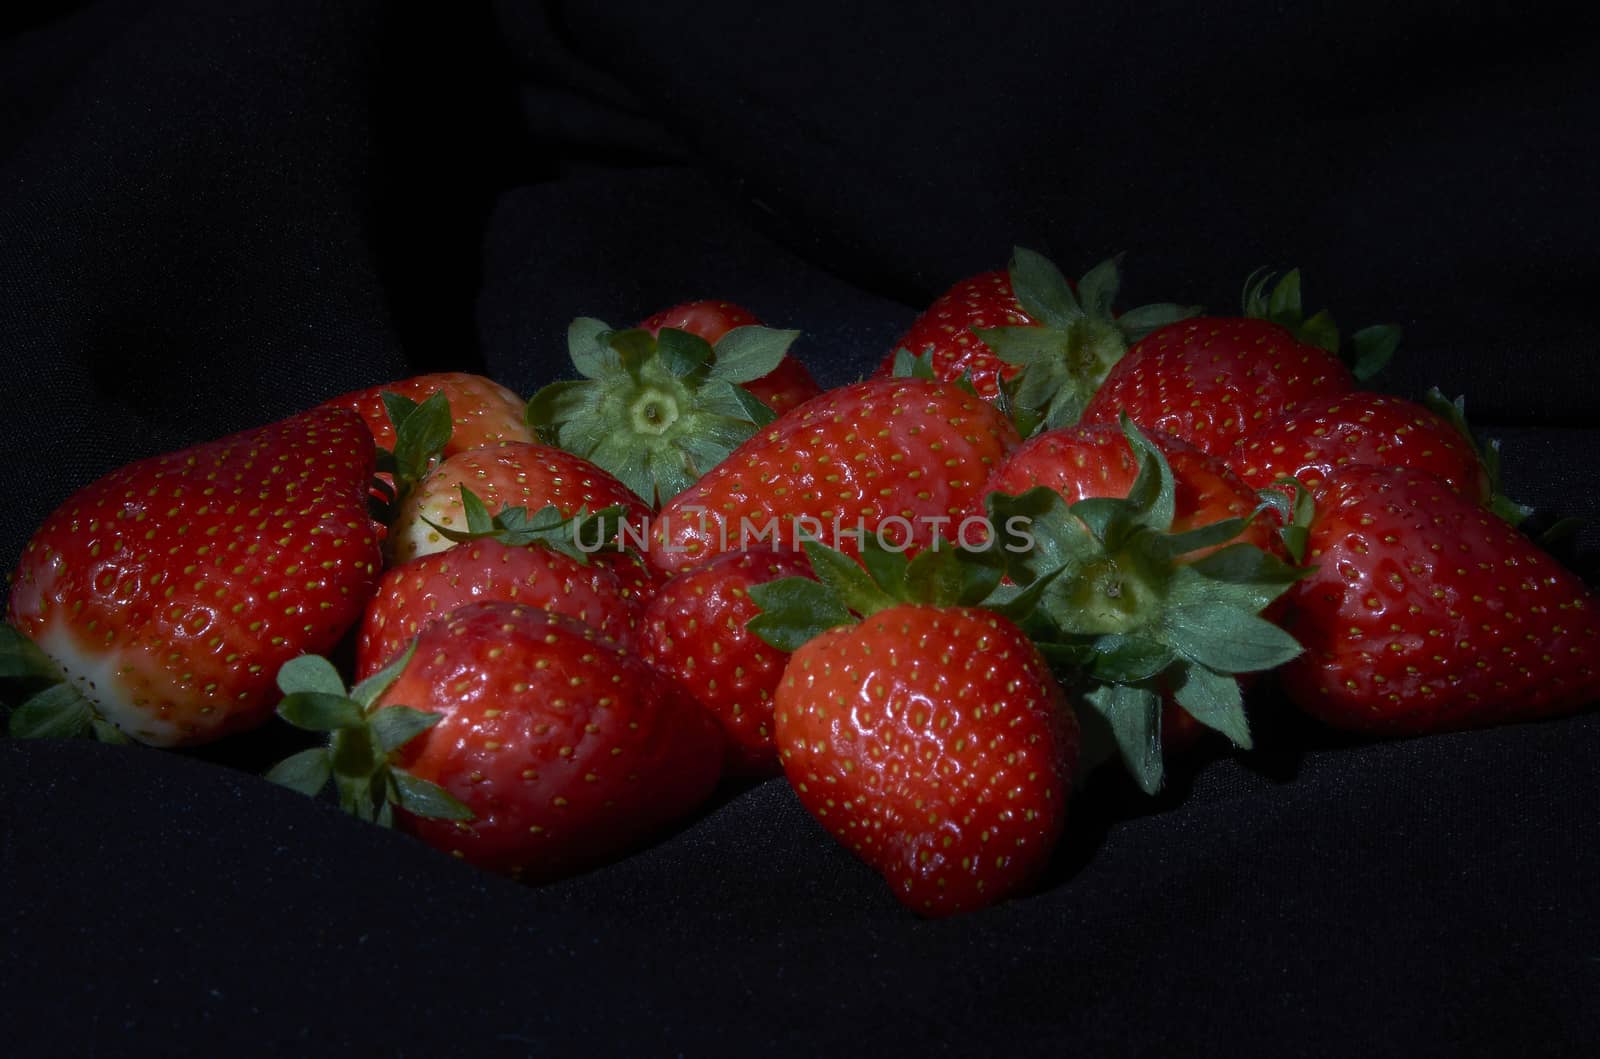 A bunch of strawberries by bpardofotografia